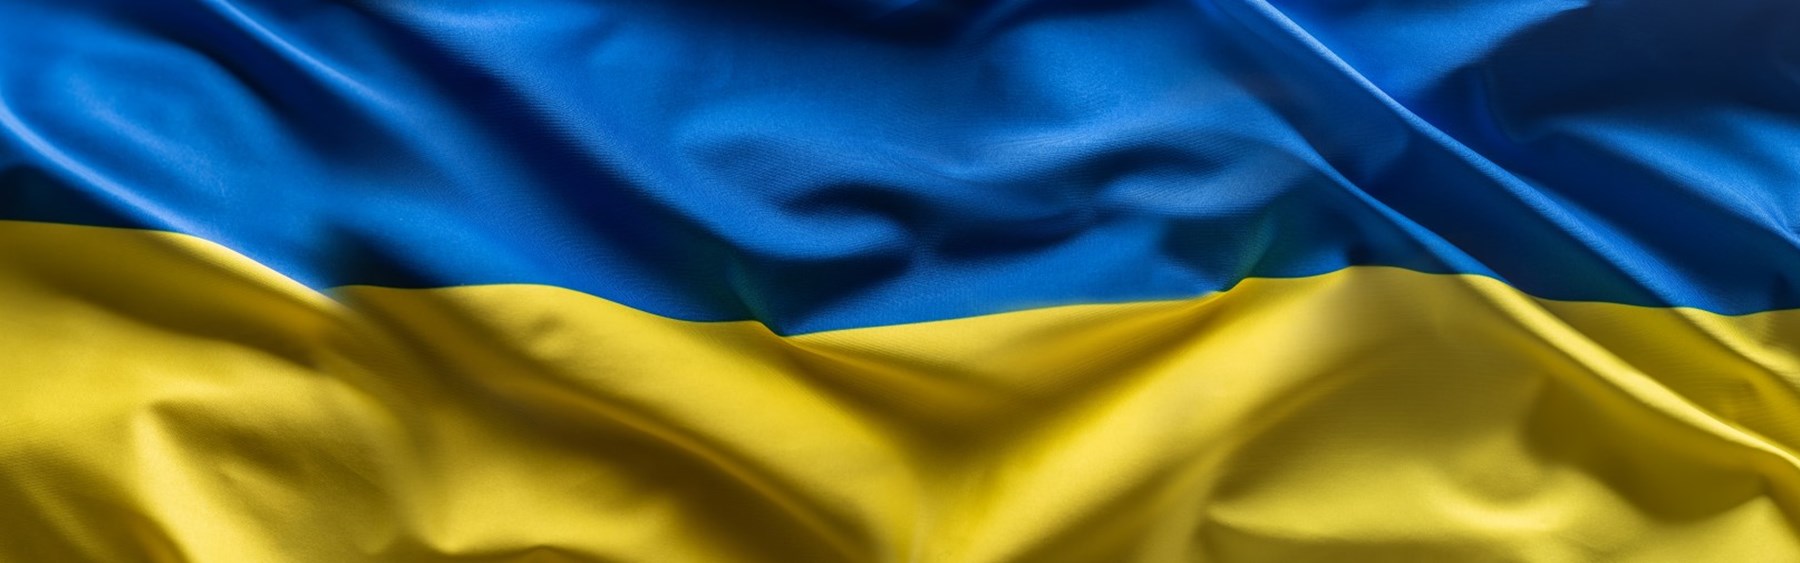 Etårsdagen for Ruslands invasion i Ukraine markeres.